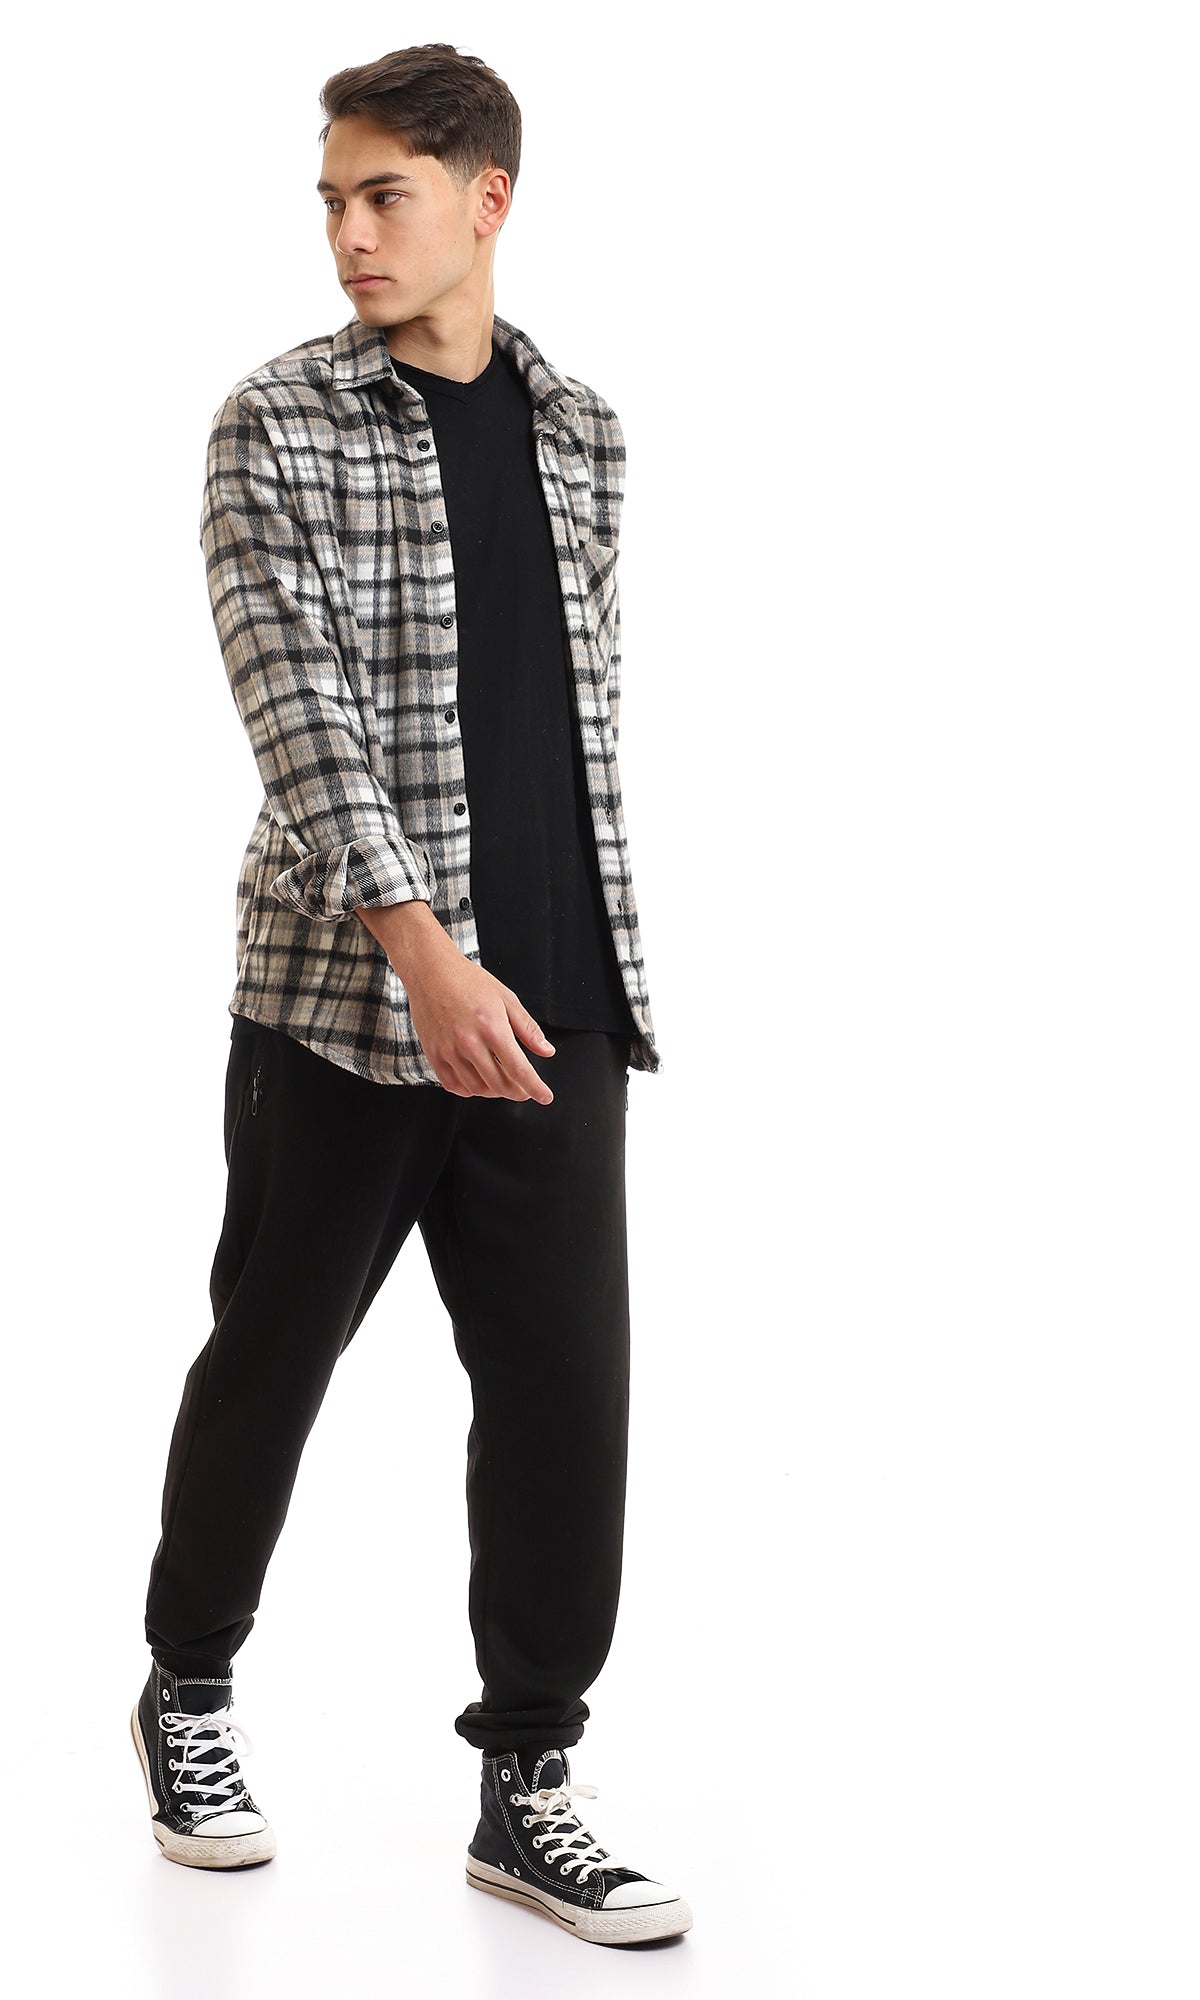 95995 Cotton Checkered Side Left Pocket Shirt - Black & Beige